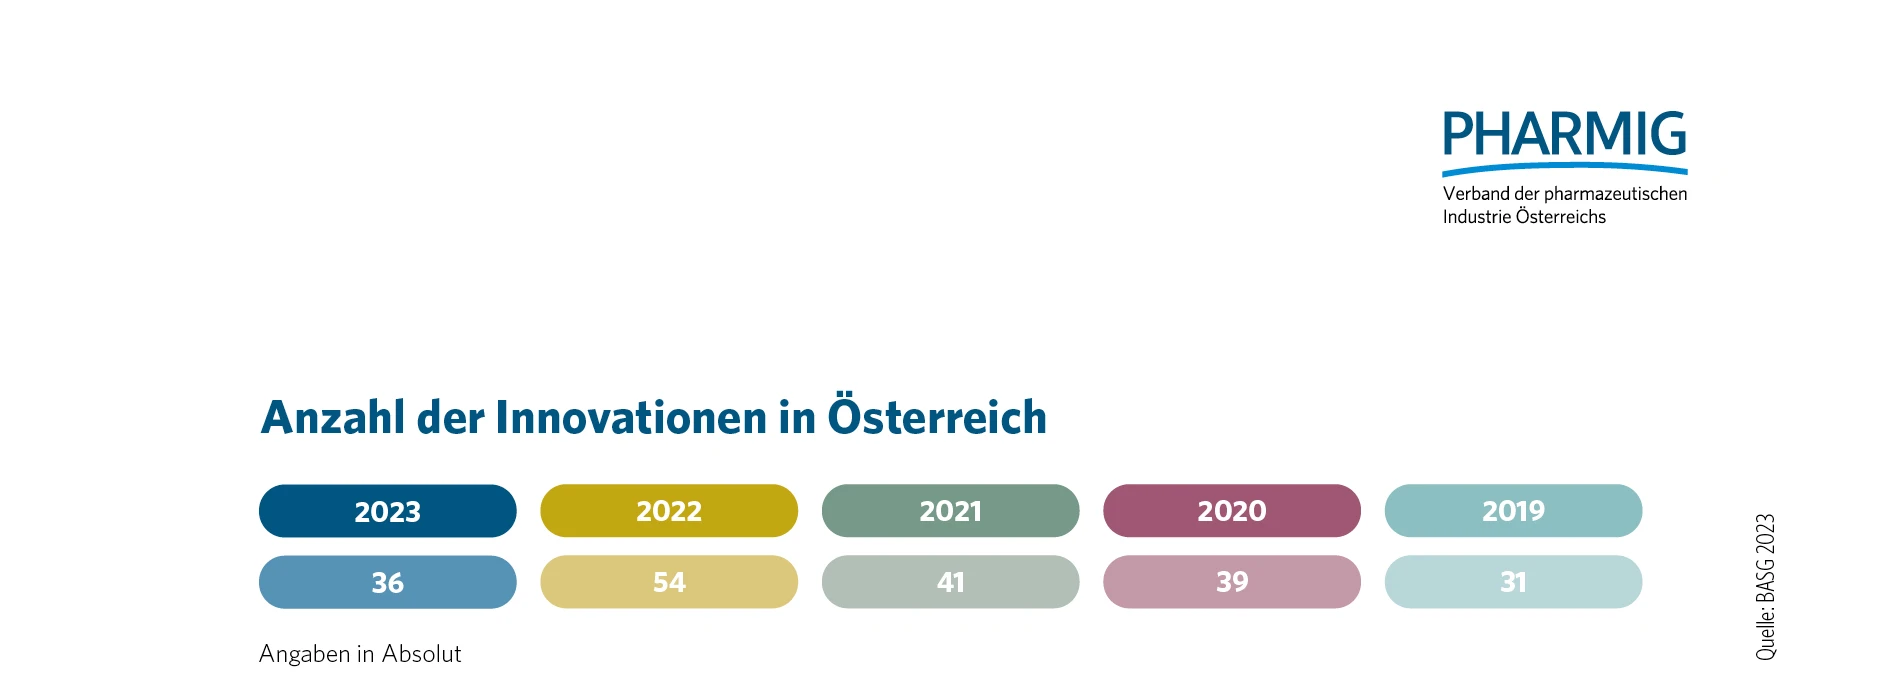 © 4.5 Arzneimittelinnovationen in Österreich (2019 - 2023)